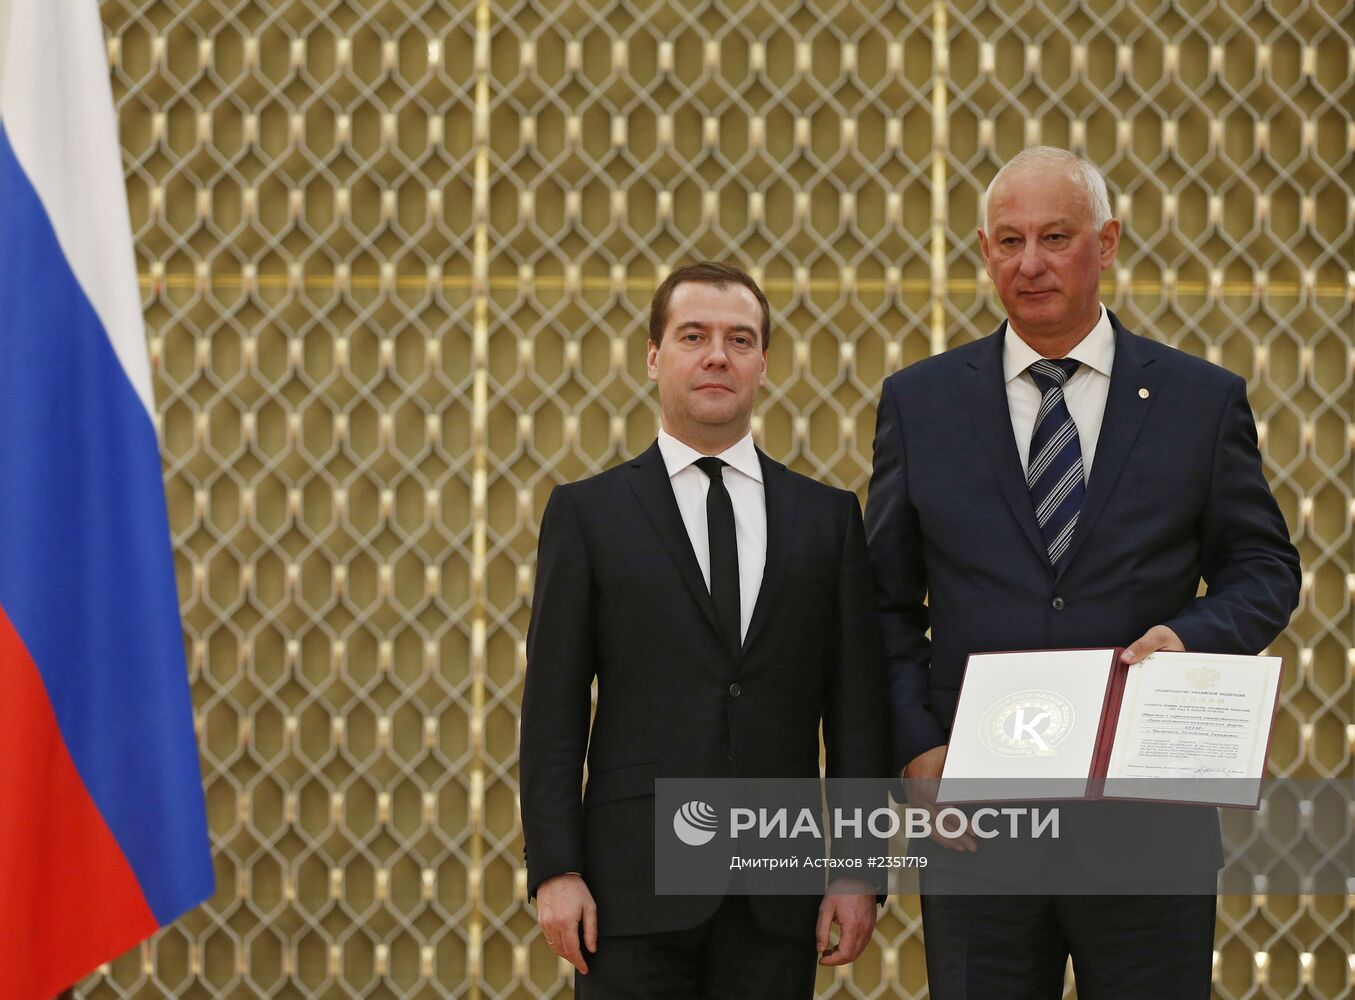 Д.Медведев вручил премии правительства в области качества